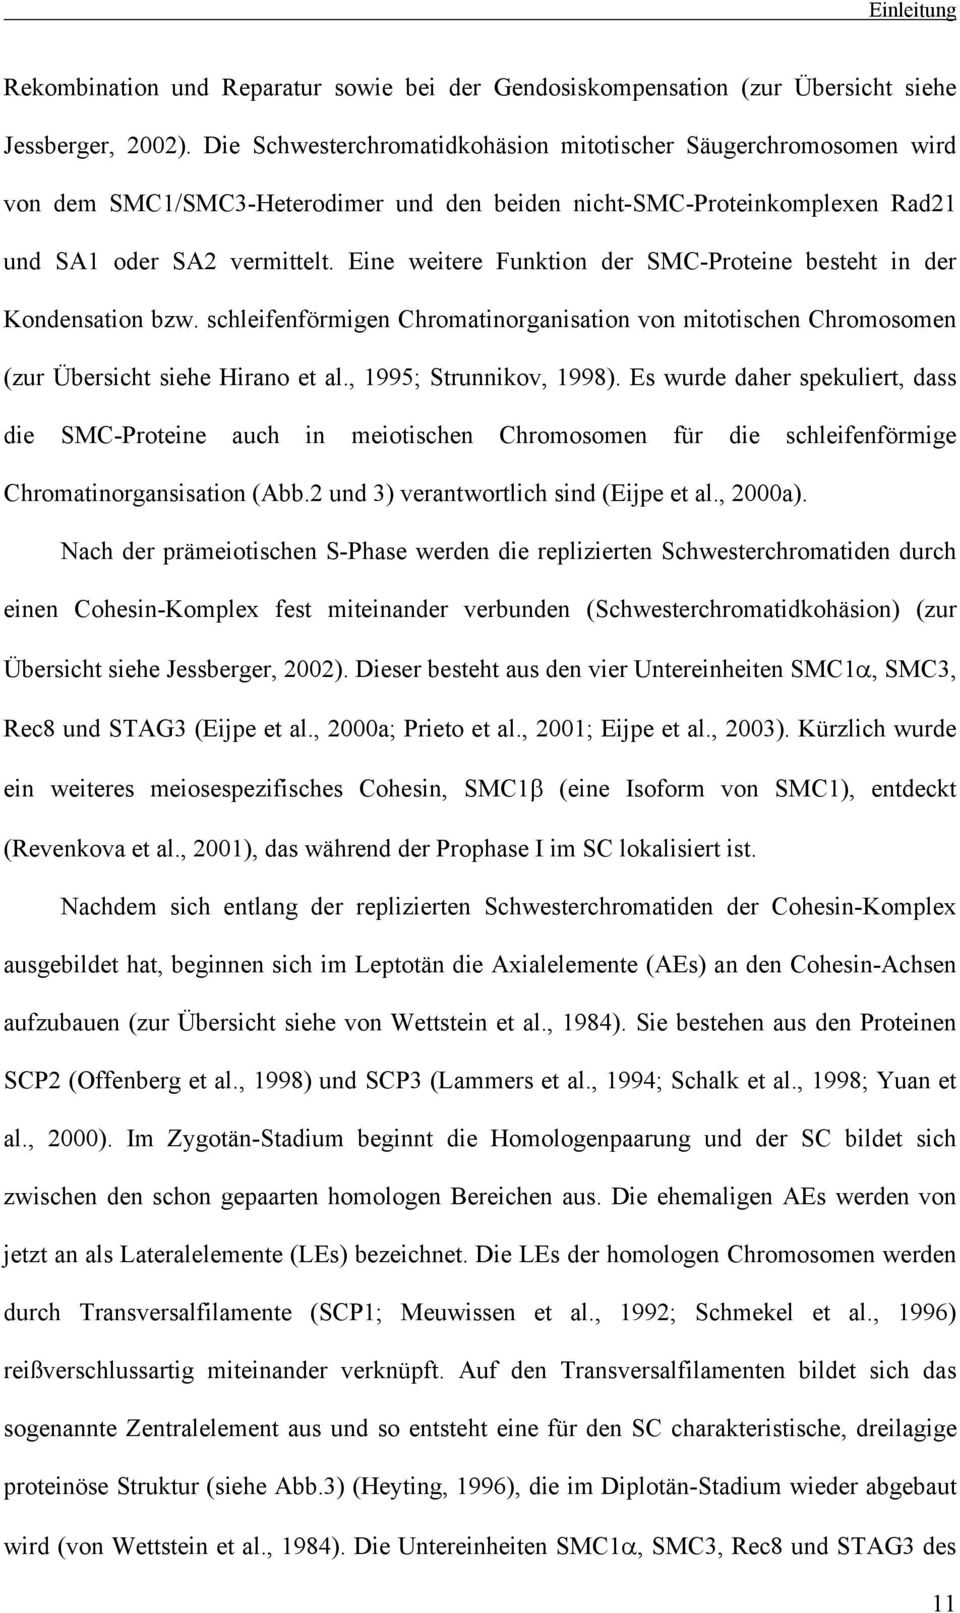 Eine weitere Funktion der SMC-Proteine besteht in der Kondensation bzw. schleifenförmigen Chromatinorganisation von mitotischen Chromosomen (zur Übersicht siehe Hirano et al., 1995; Strunnikov, 1998).